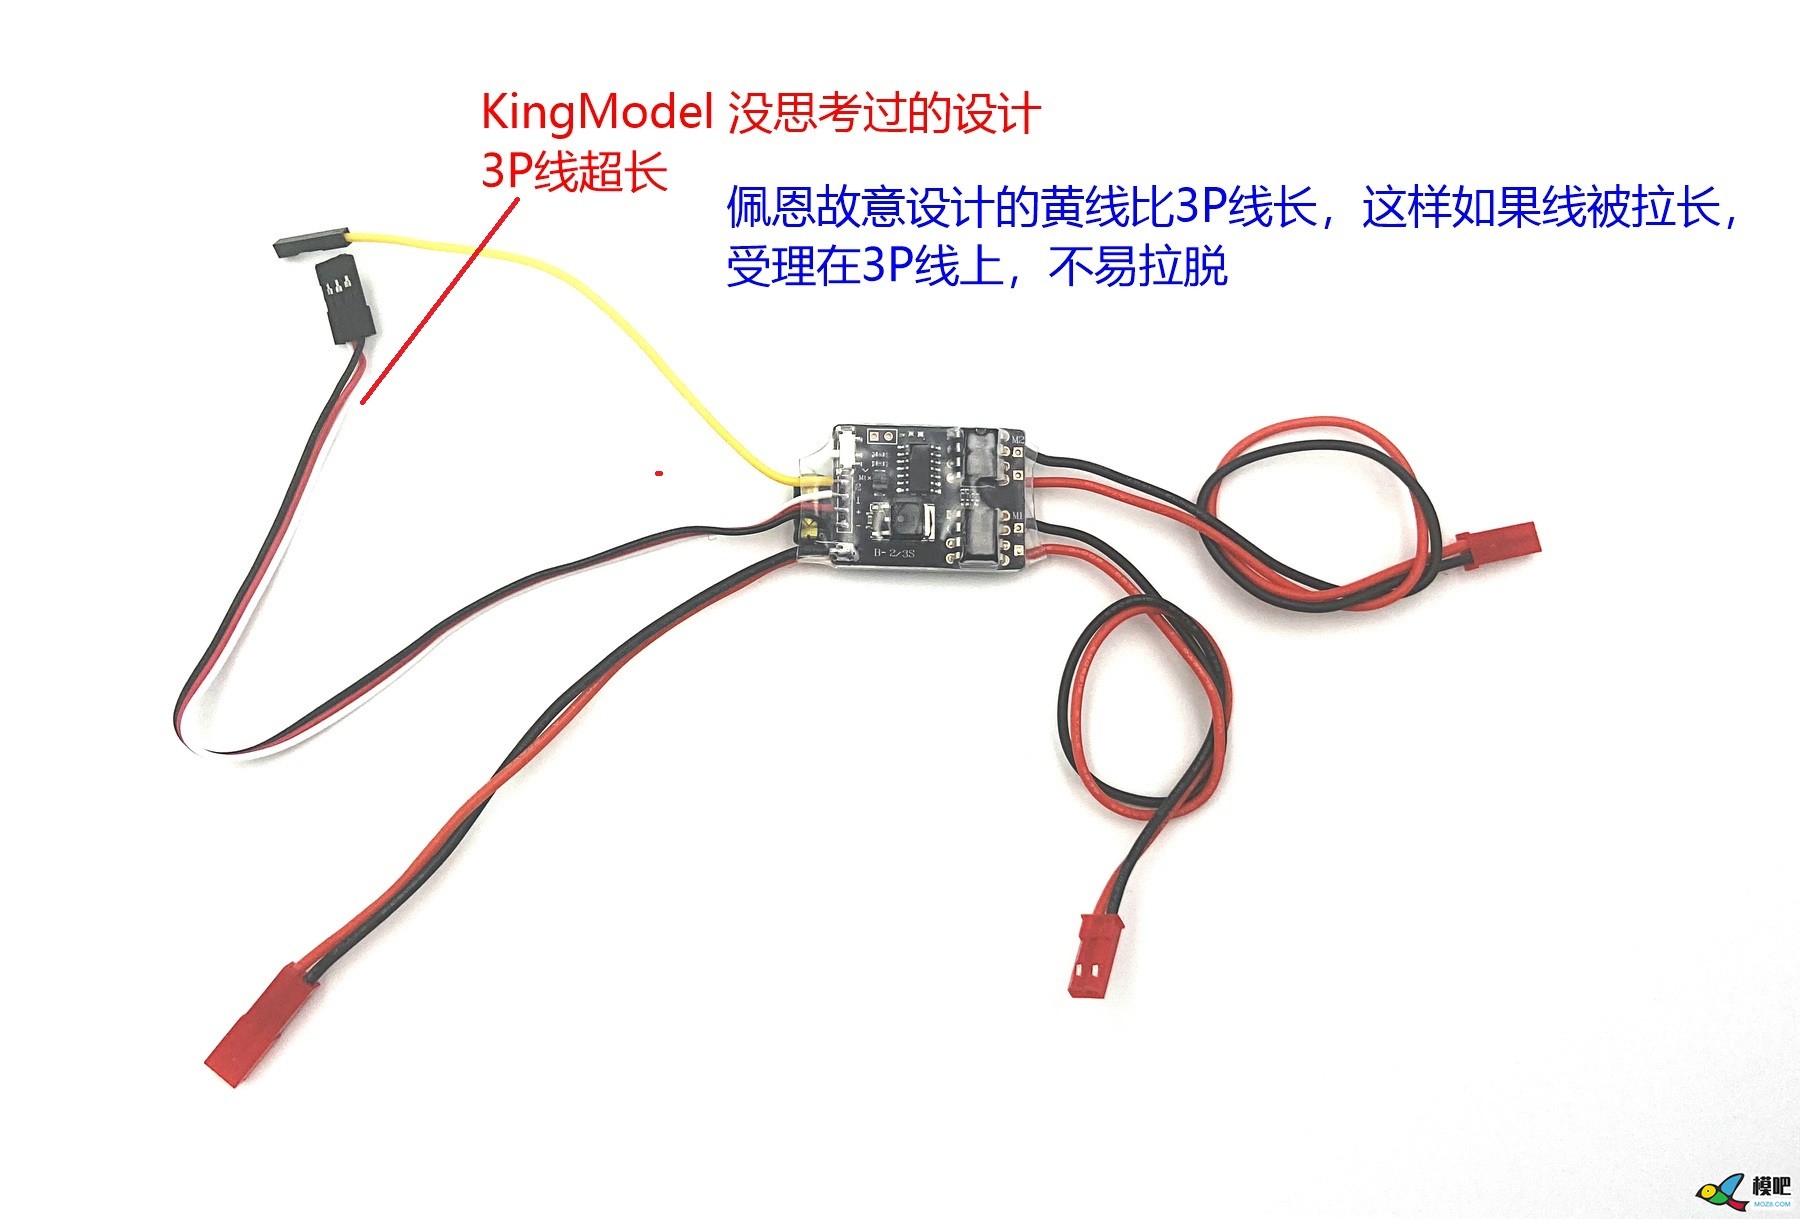 5Ax2 双路双向有刷混控电调，被 KingModel 无耻抄板 电调,有刷电调频率 作者:payne.pan 5683 